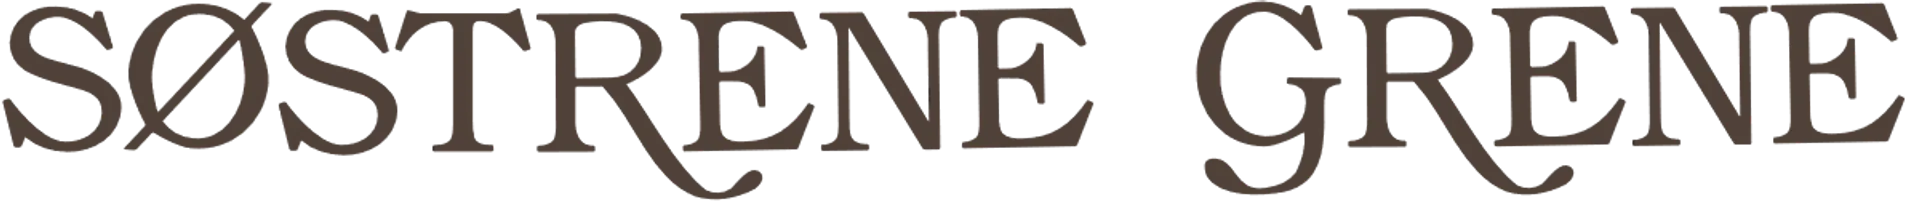 SØSTRENE GRENE logo